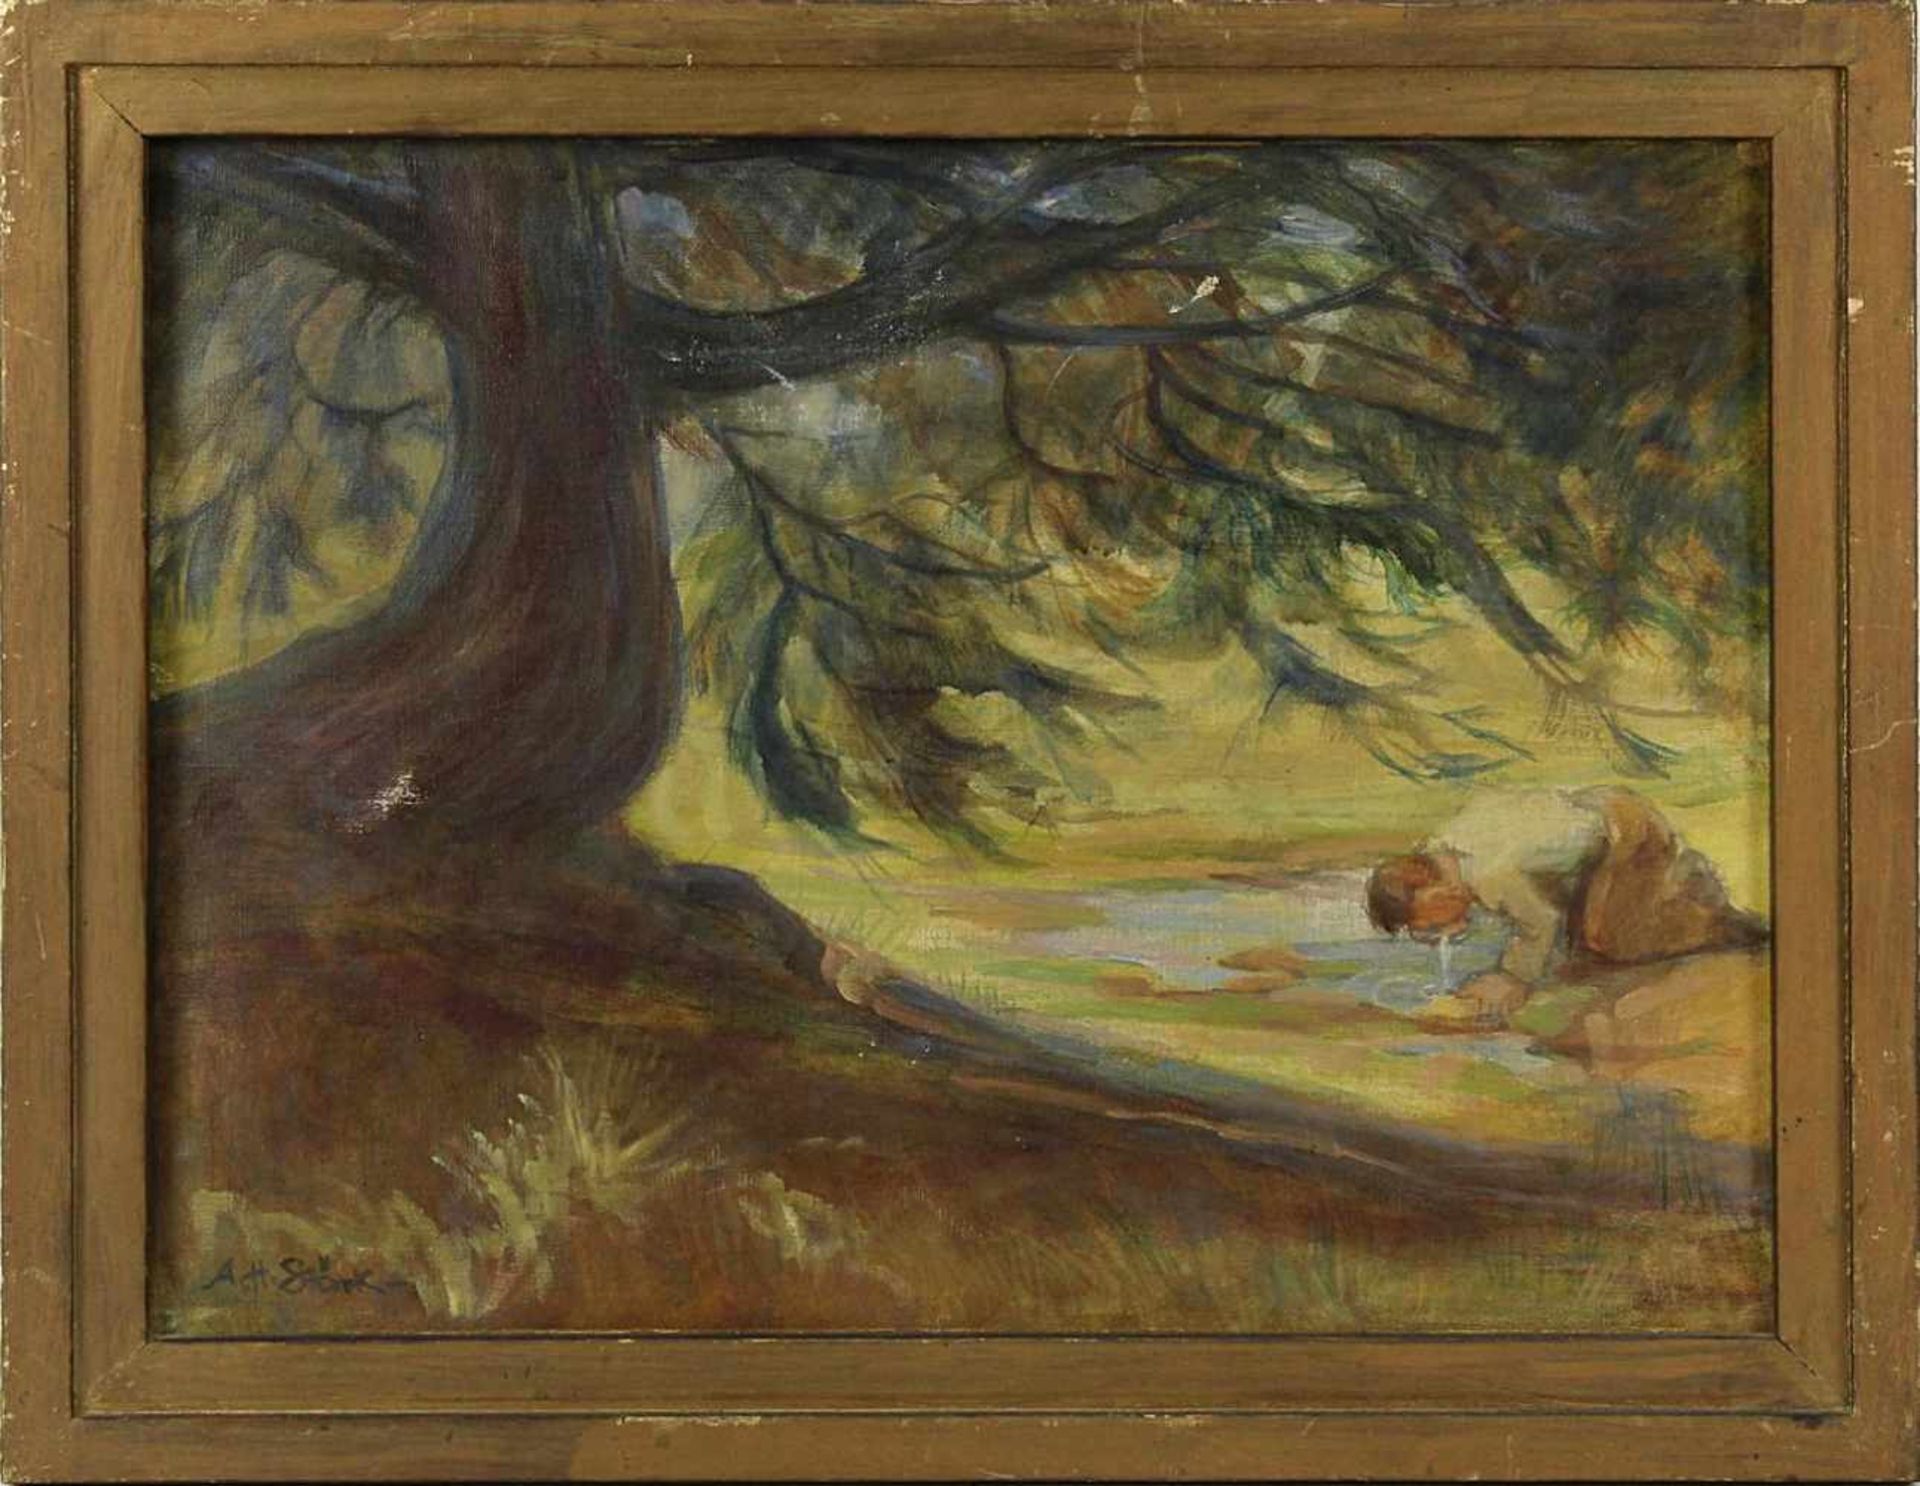 Stärk, A., dt. Landschaftsmaler, Rastender beim Wasser trinken (19)49, Öl auf Leinwand, links